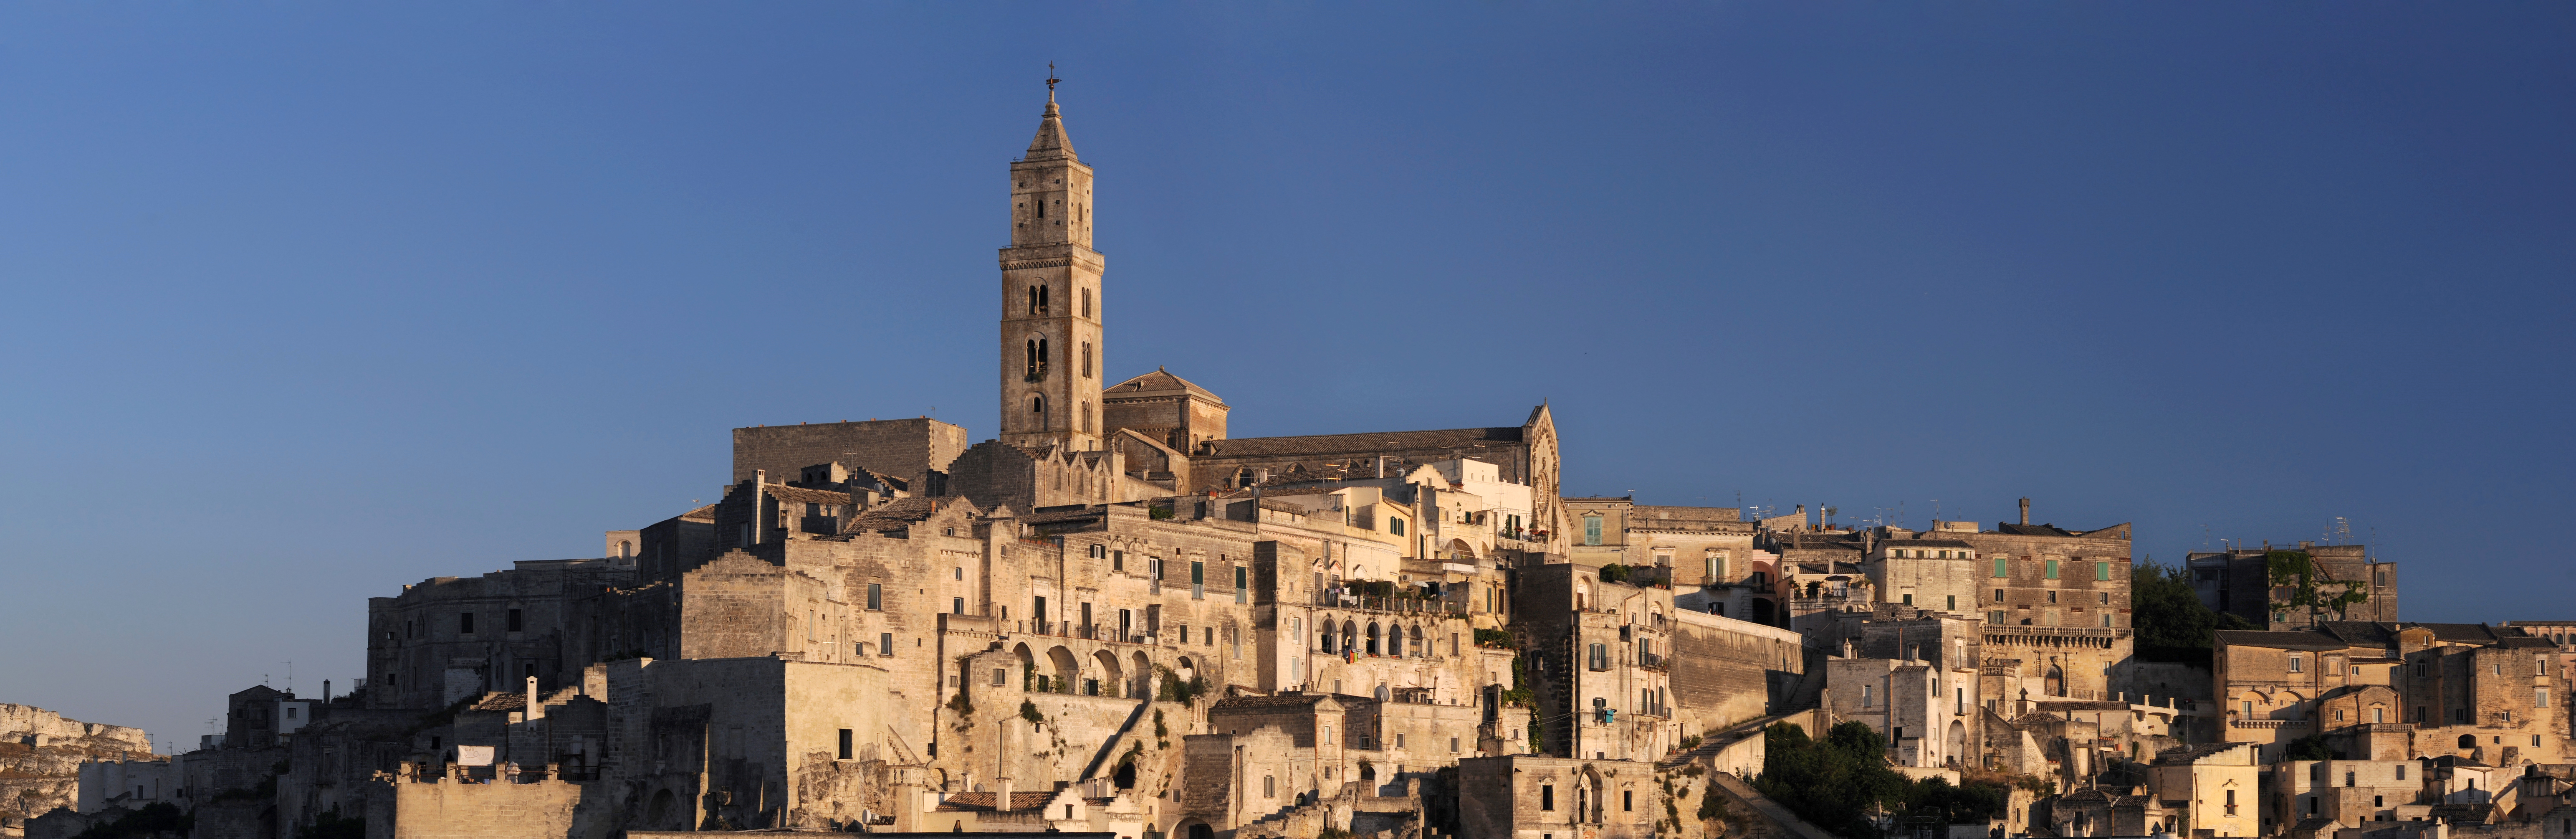 Giornate Fai 2015: la Cattedrale di Matera